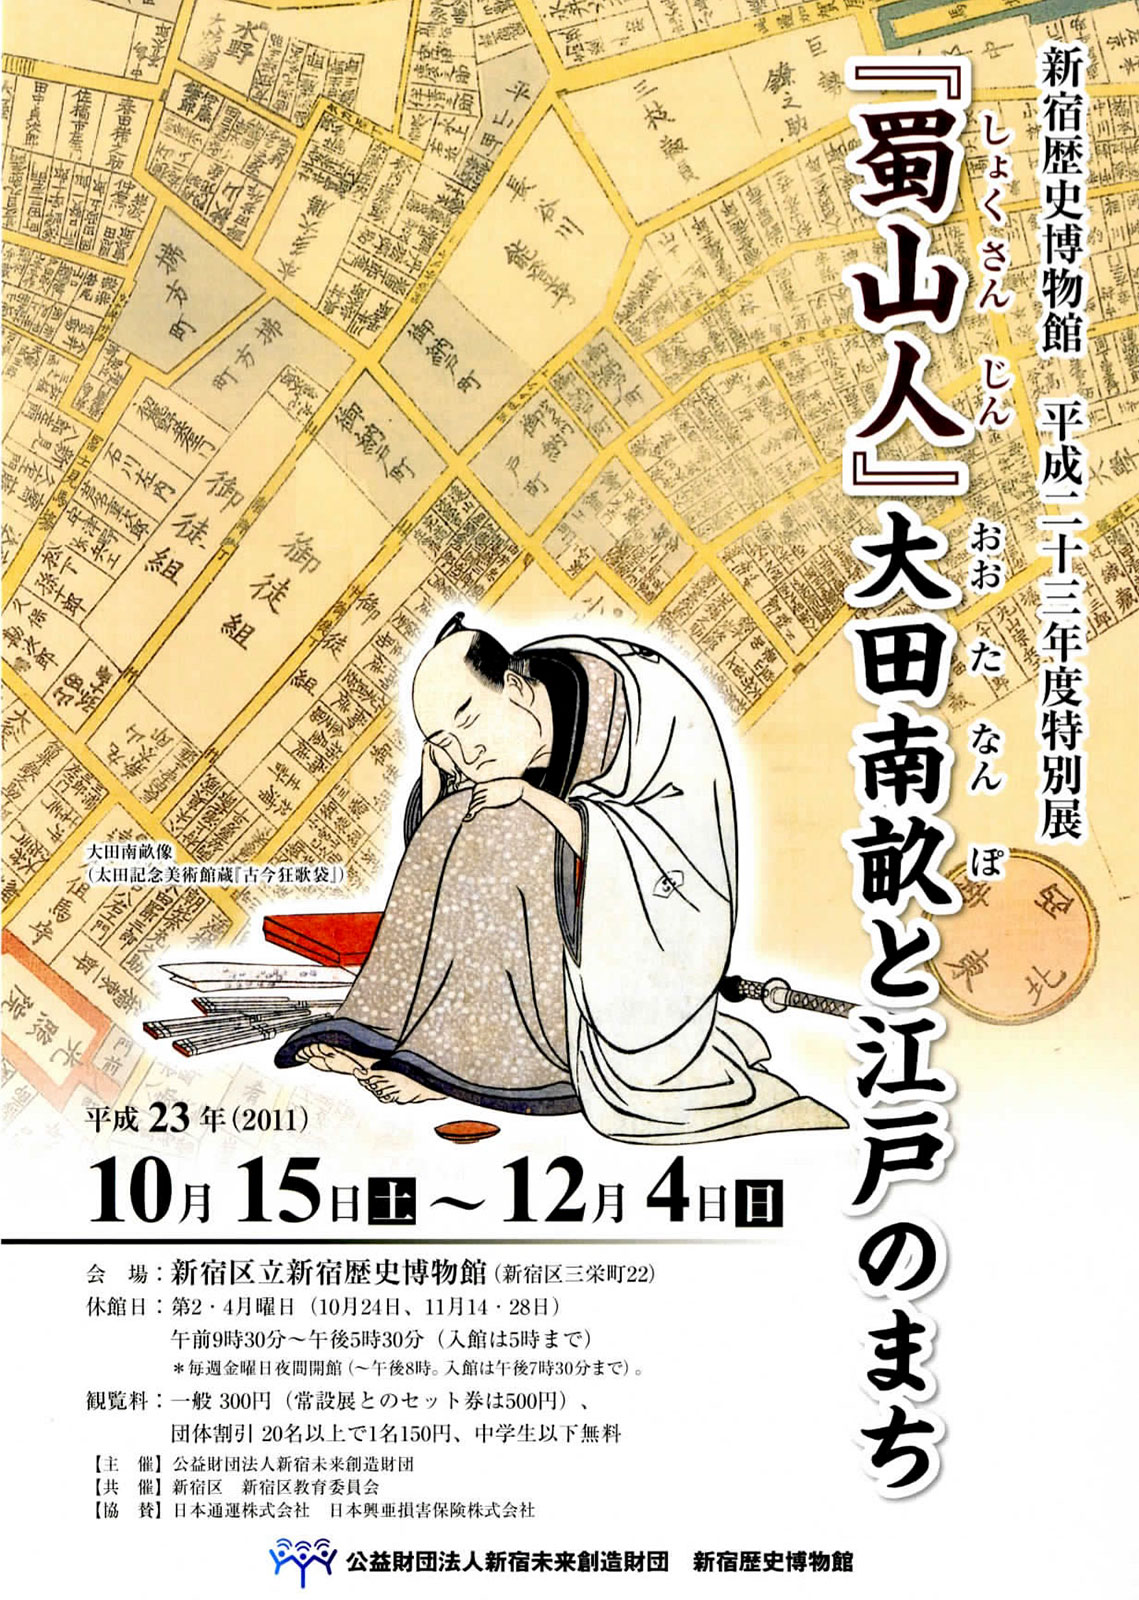 2011年に「新宿歴史博物館」で行った特別展「『蜀山人』大田南畝と江戸のまち」チラシ